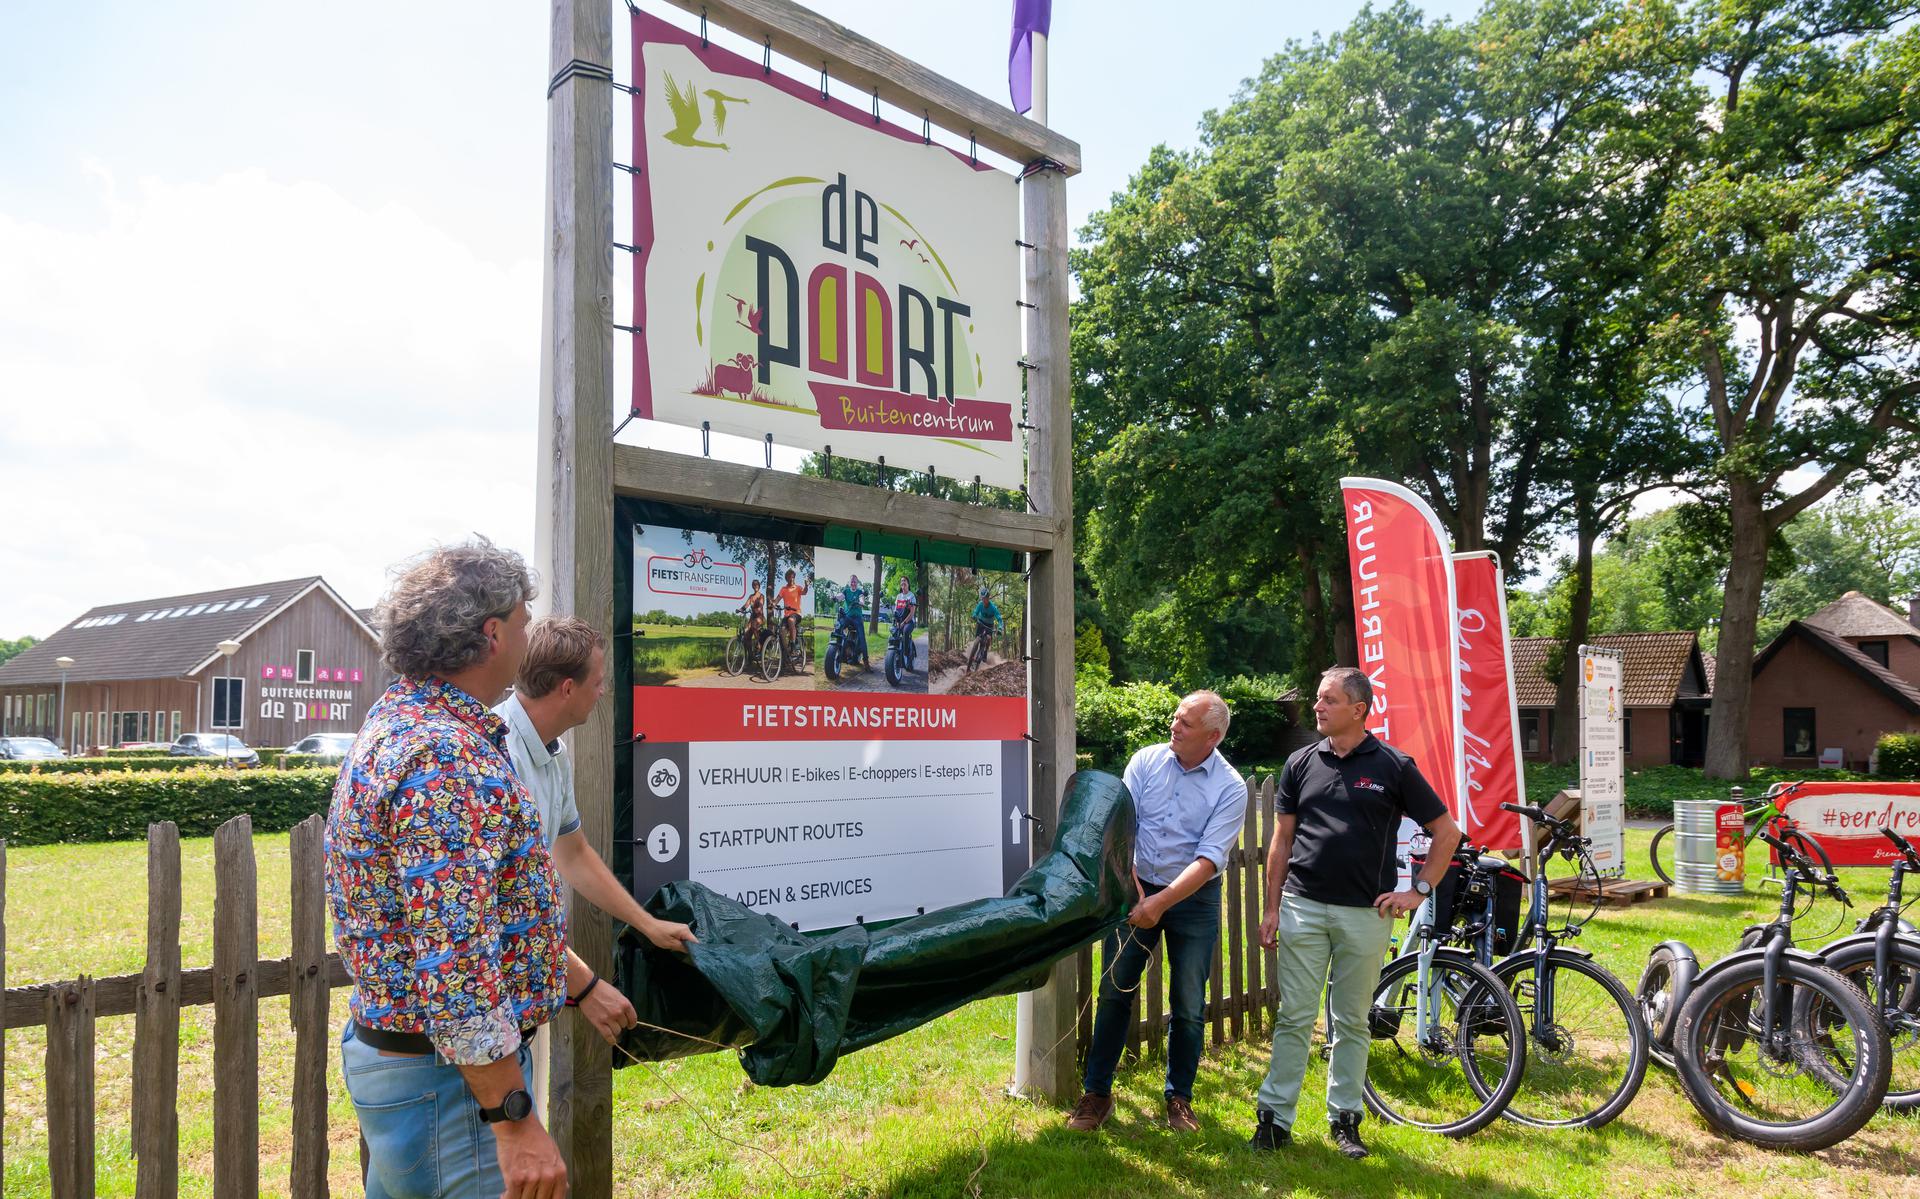 Gedeputeerde Henk Brink opende een fietstransferia, bij Buitencentrum de Poort in Ruinen.